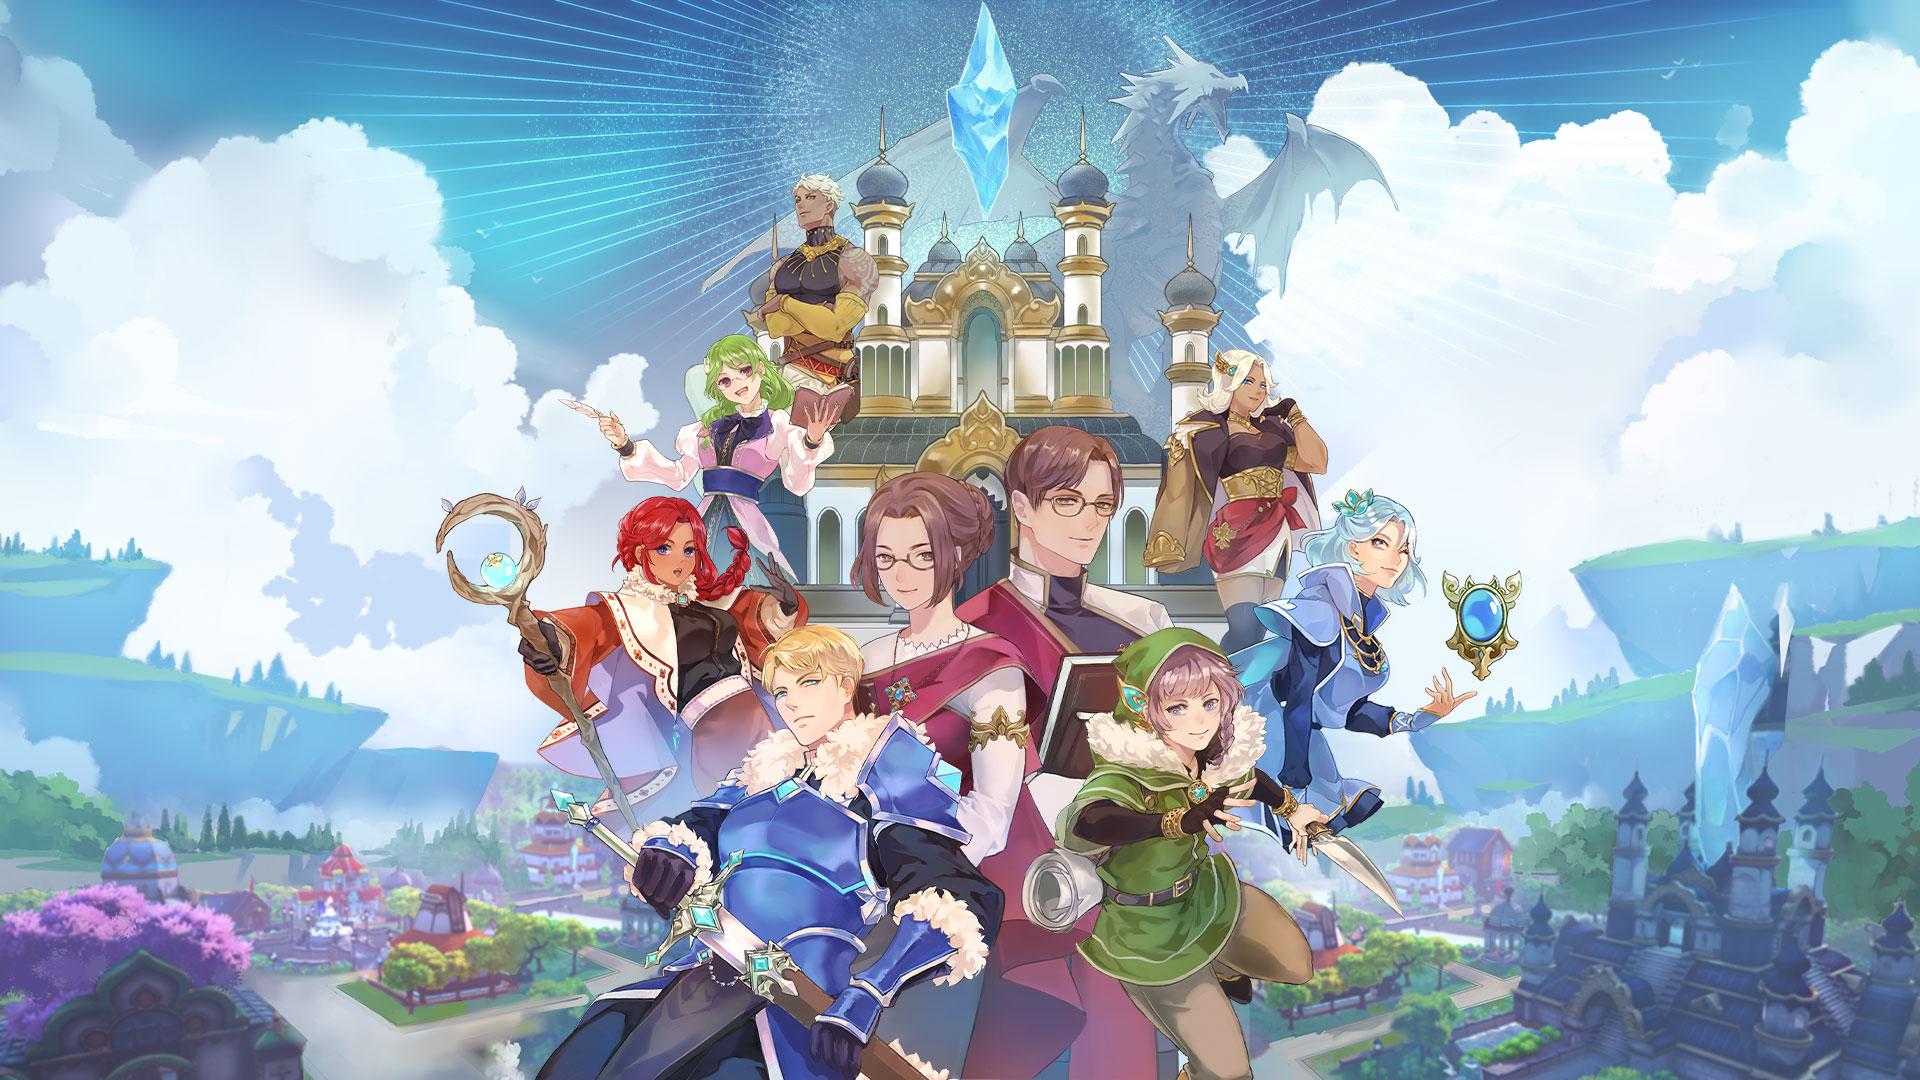 Final Fantasy: Una mirada a las mecánicas de la saga